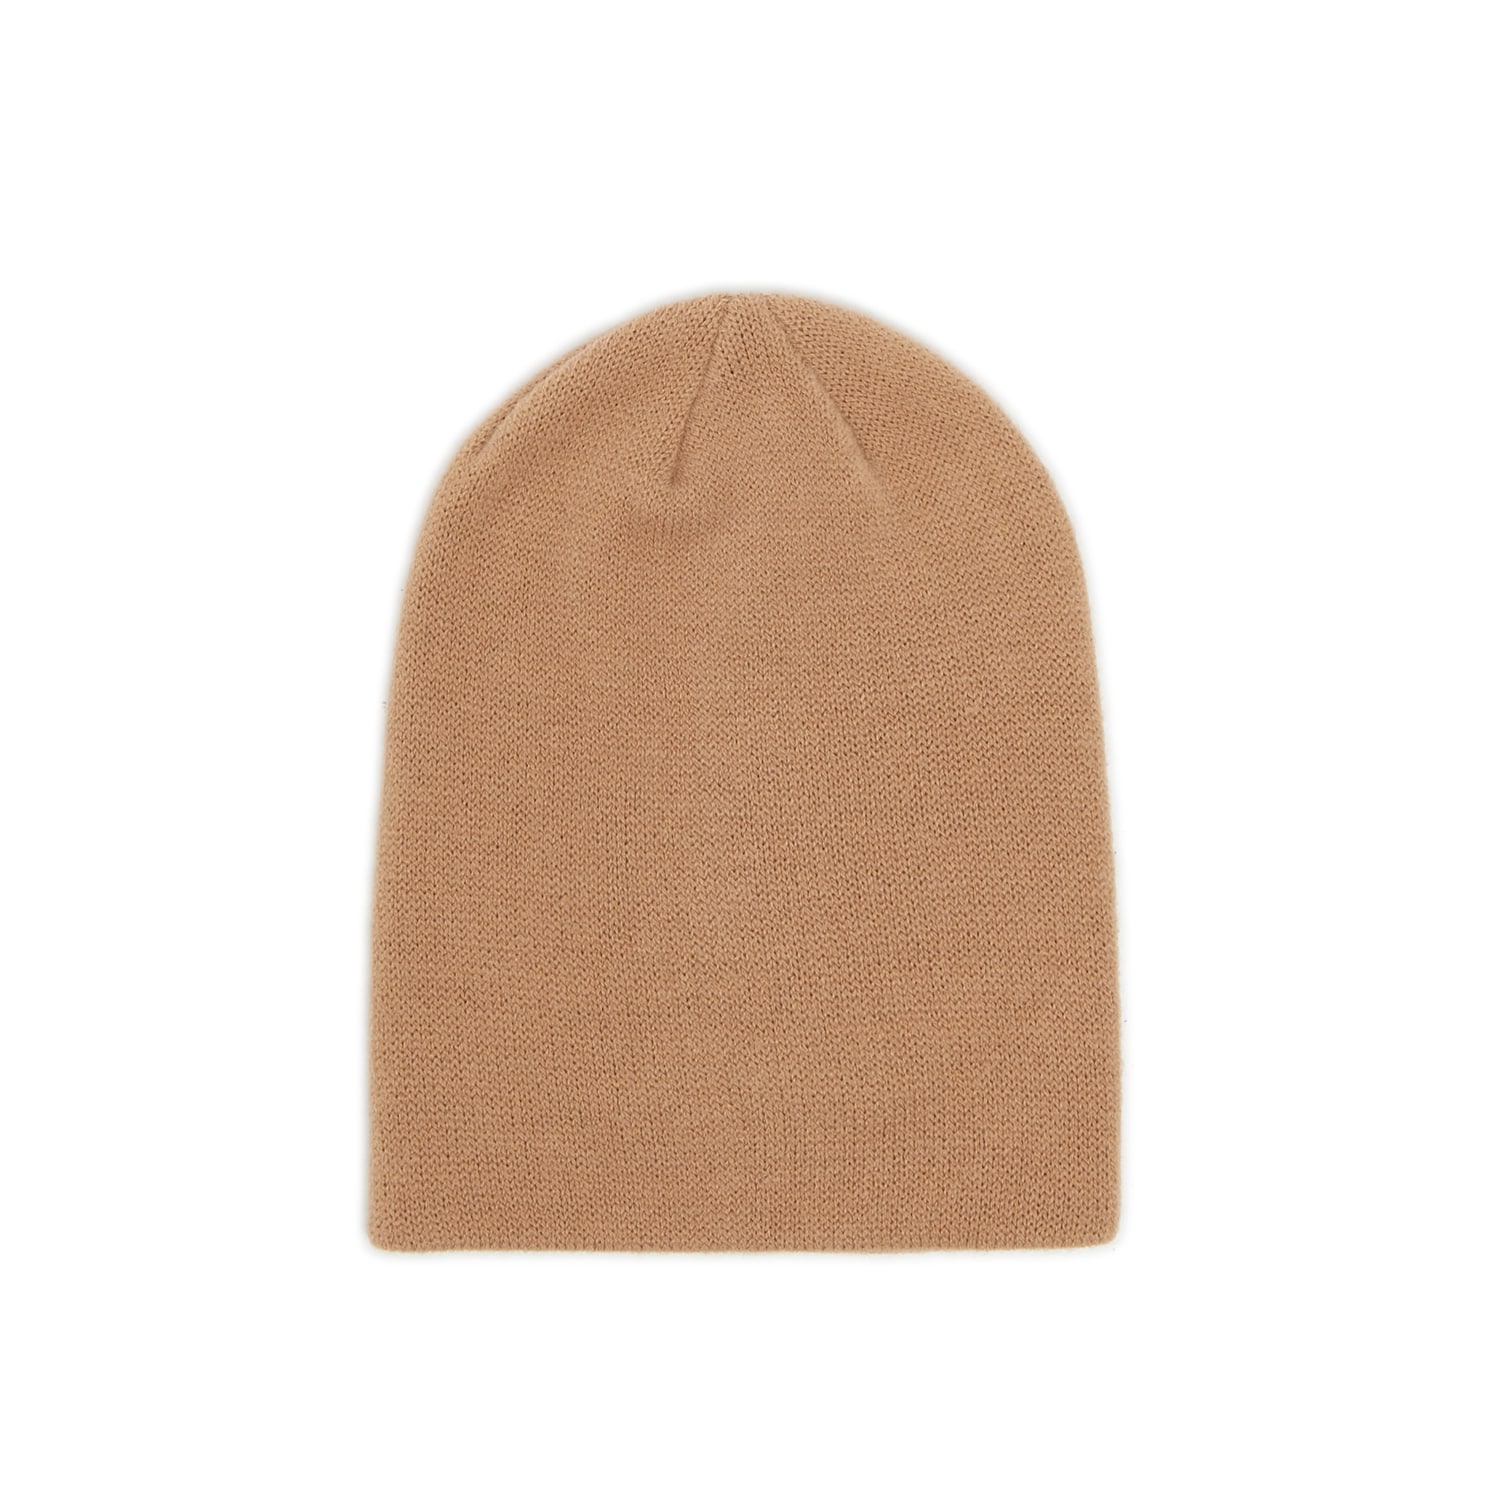 Cropp - Beżowa czapka basic beanie - Beżowy